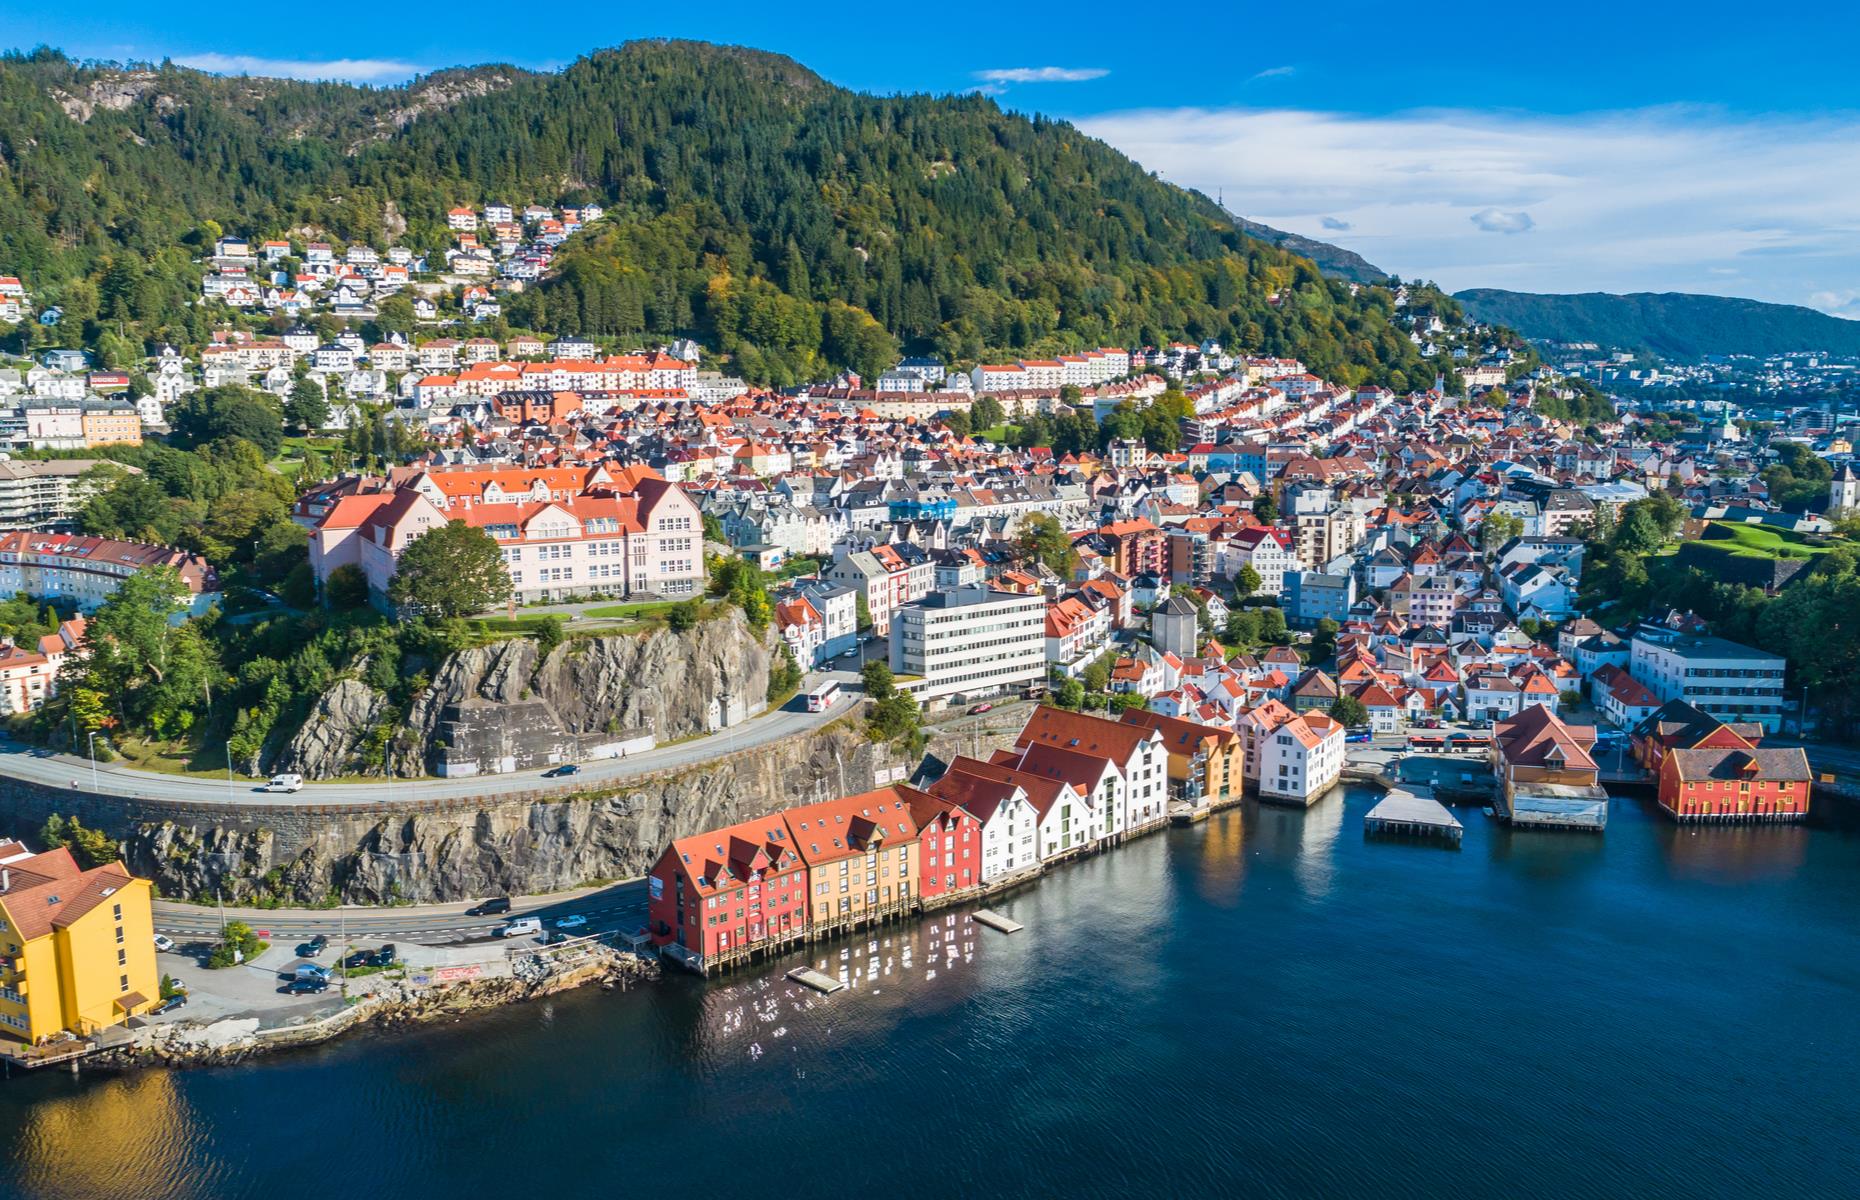 19. Norway – Median wealth: $70,627